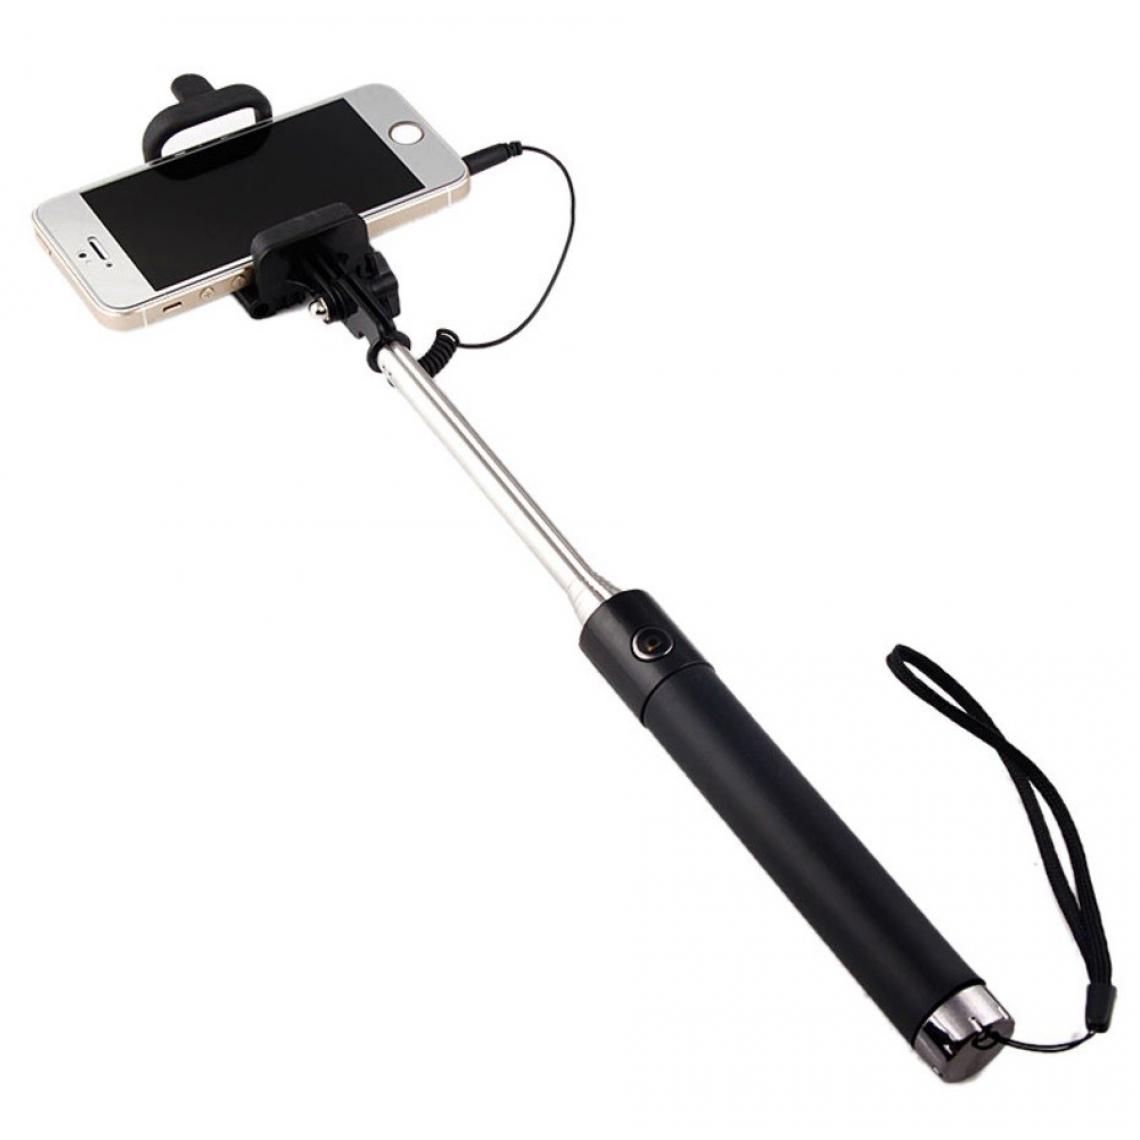 Shot - Selfie Stick Metal pour "SAMSUNG Galaxy A30" Smartphone Perche Android IOS Reglable Bouton Photo Cable Jack Noir - Autres accessoires smartphone